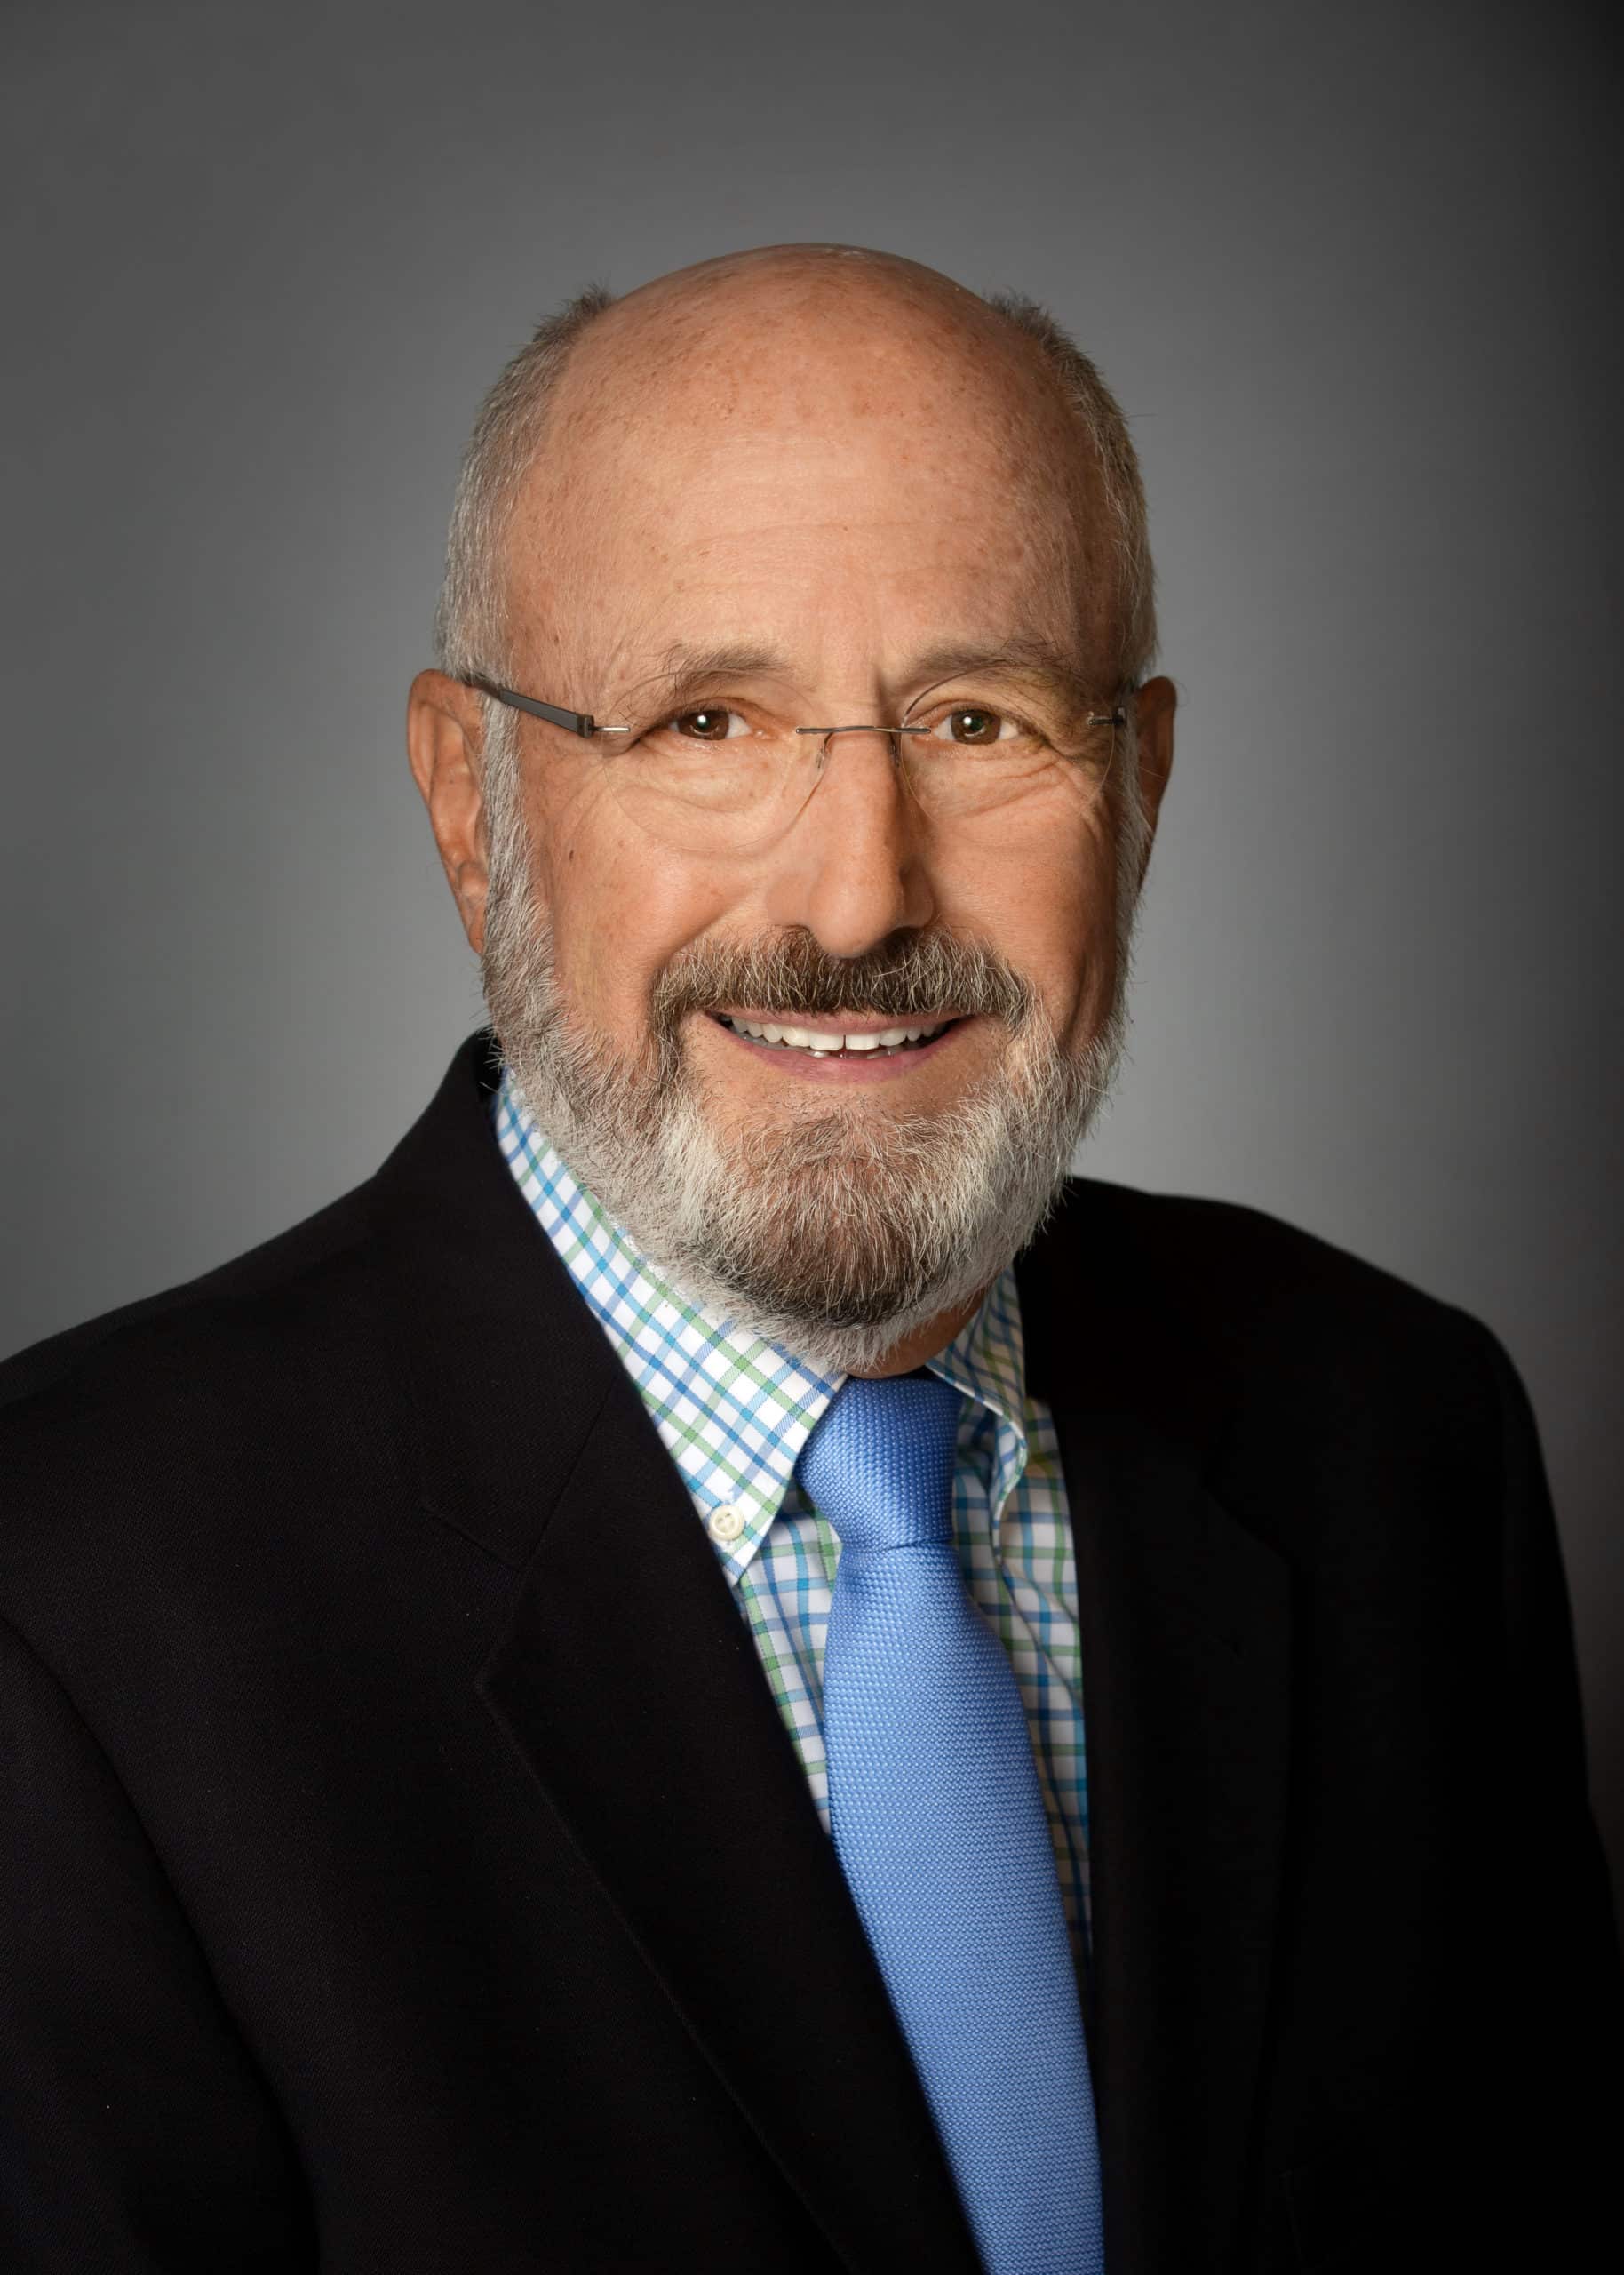 Michael A. Stein